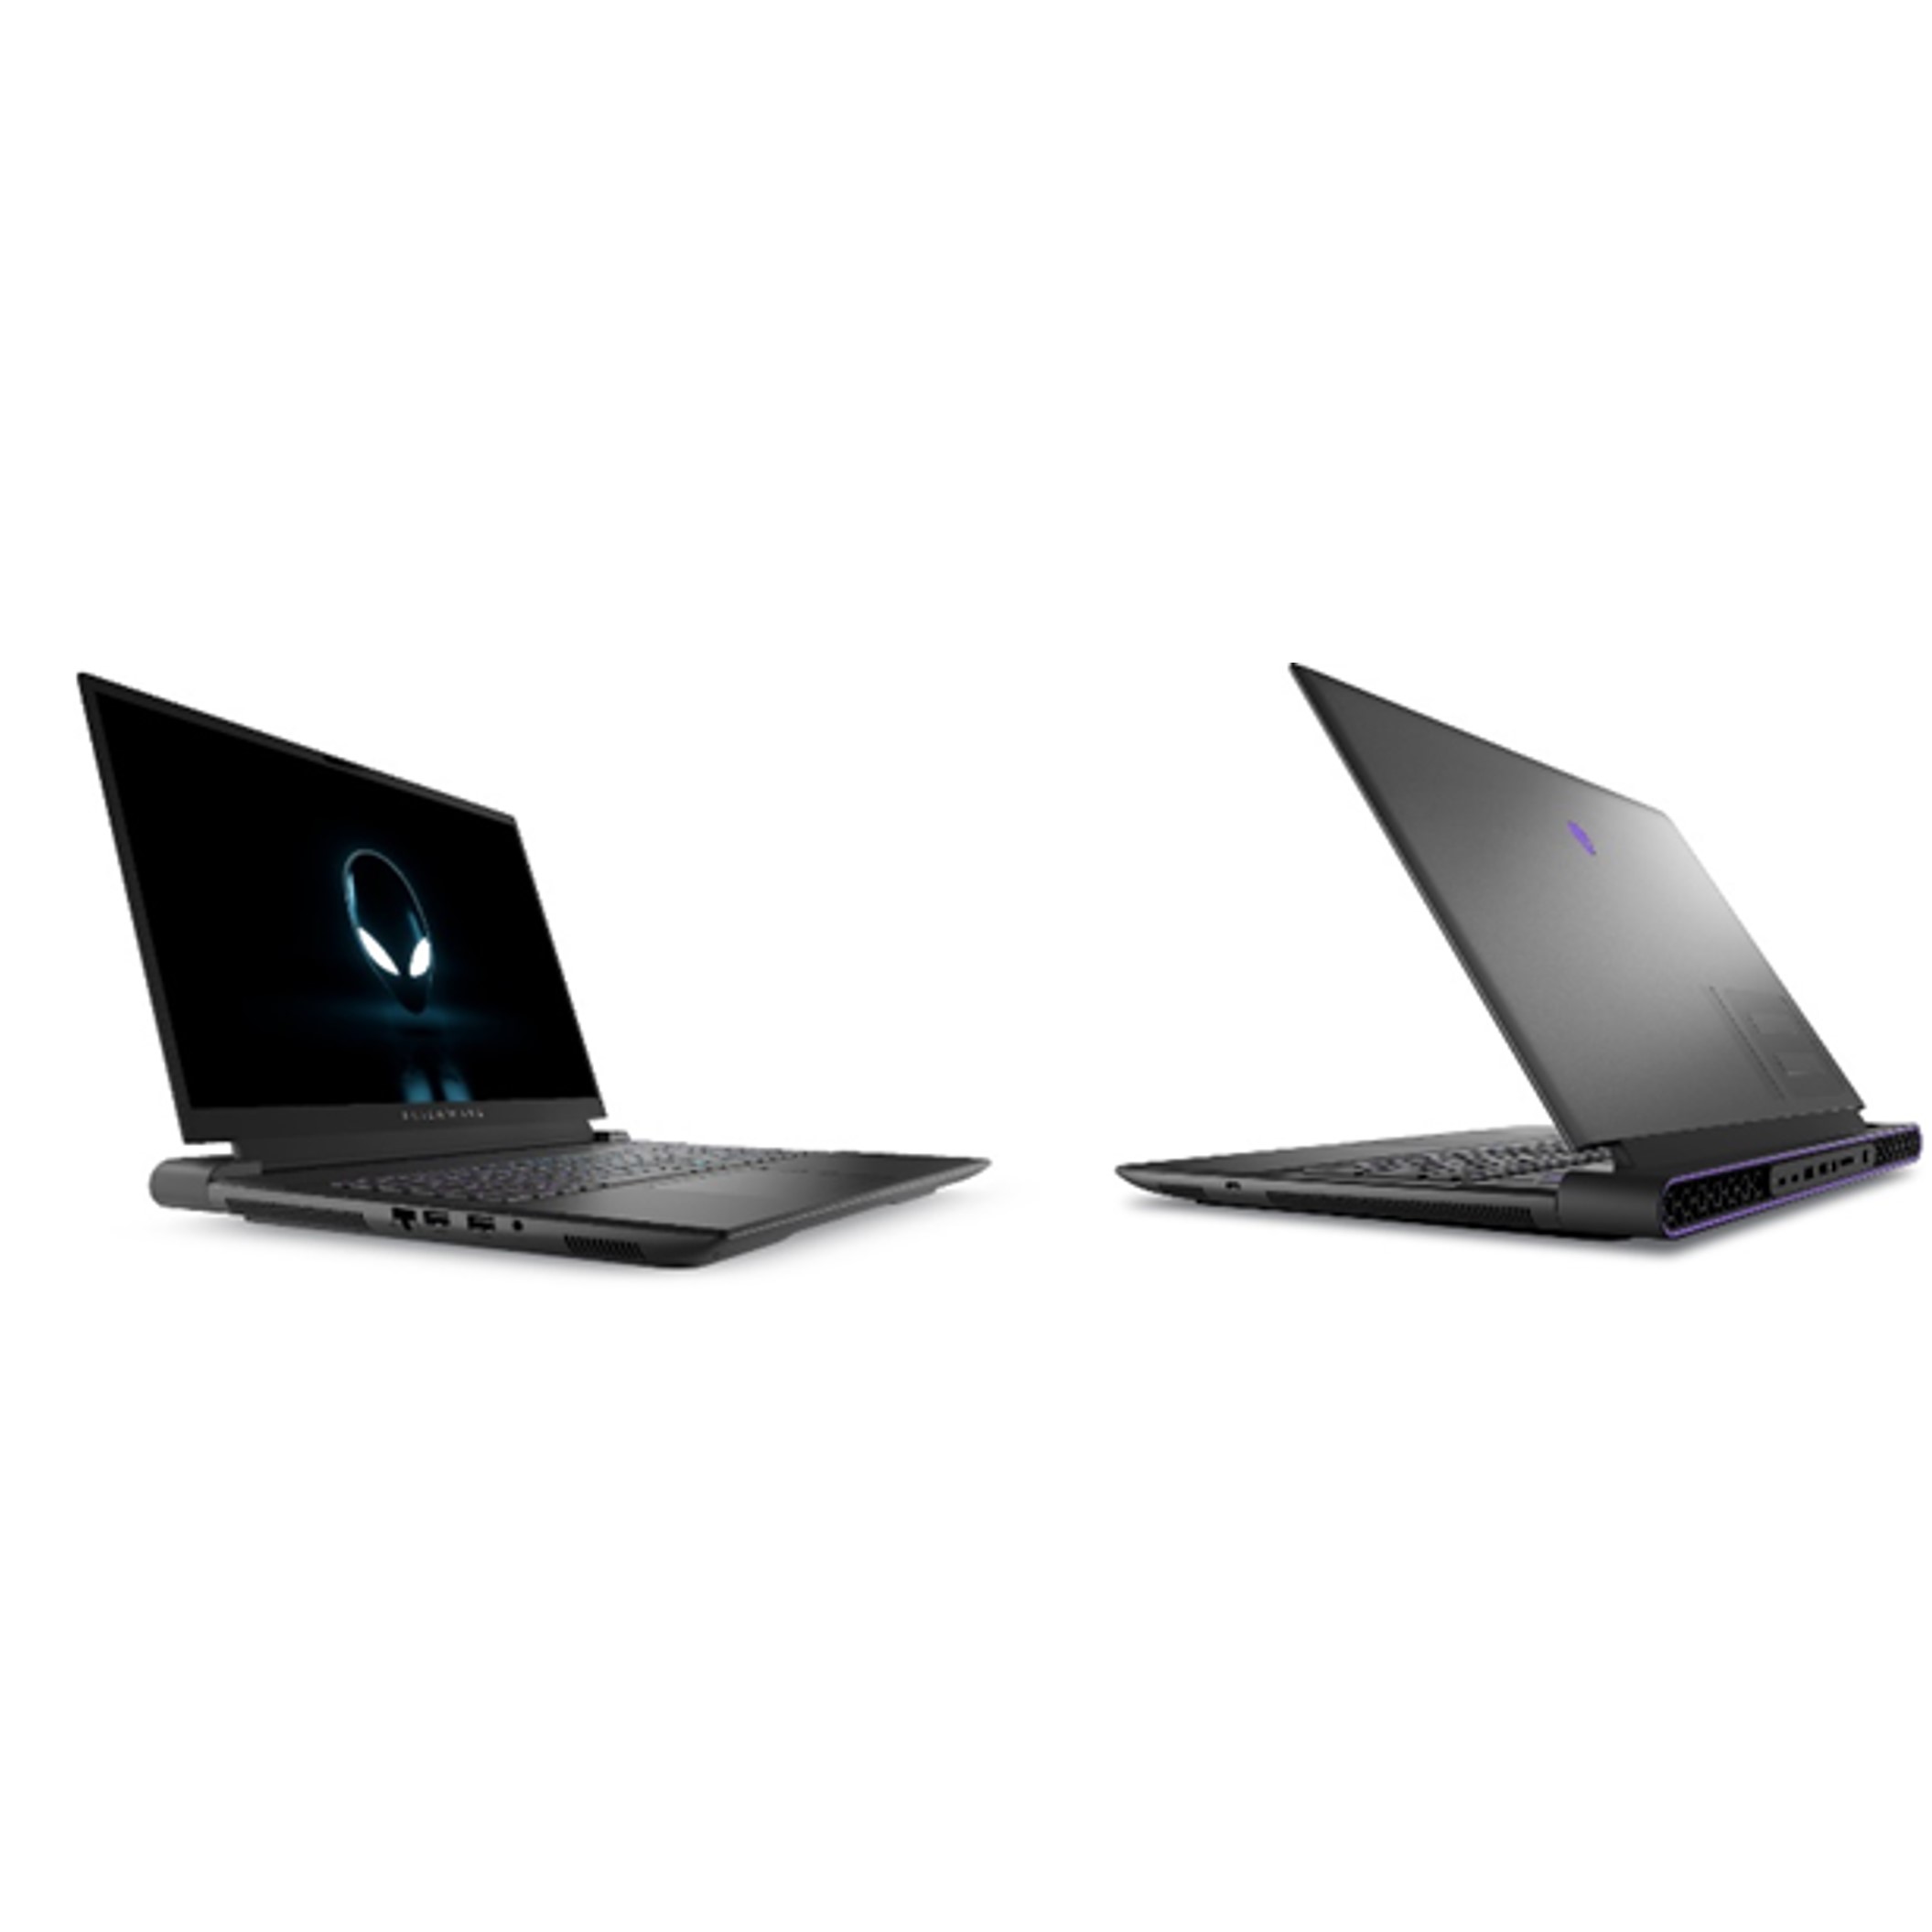 デル・テクノロジーズ、「Alienware m18 R2ゲーミングノートパソコン」を販売開始 | Dell Technologies Japan